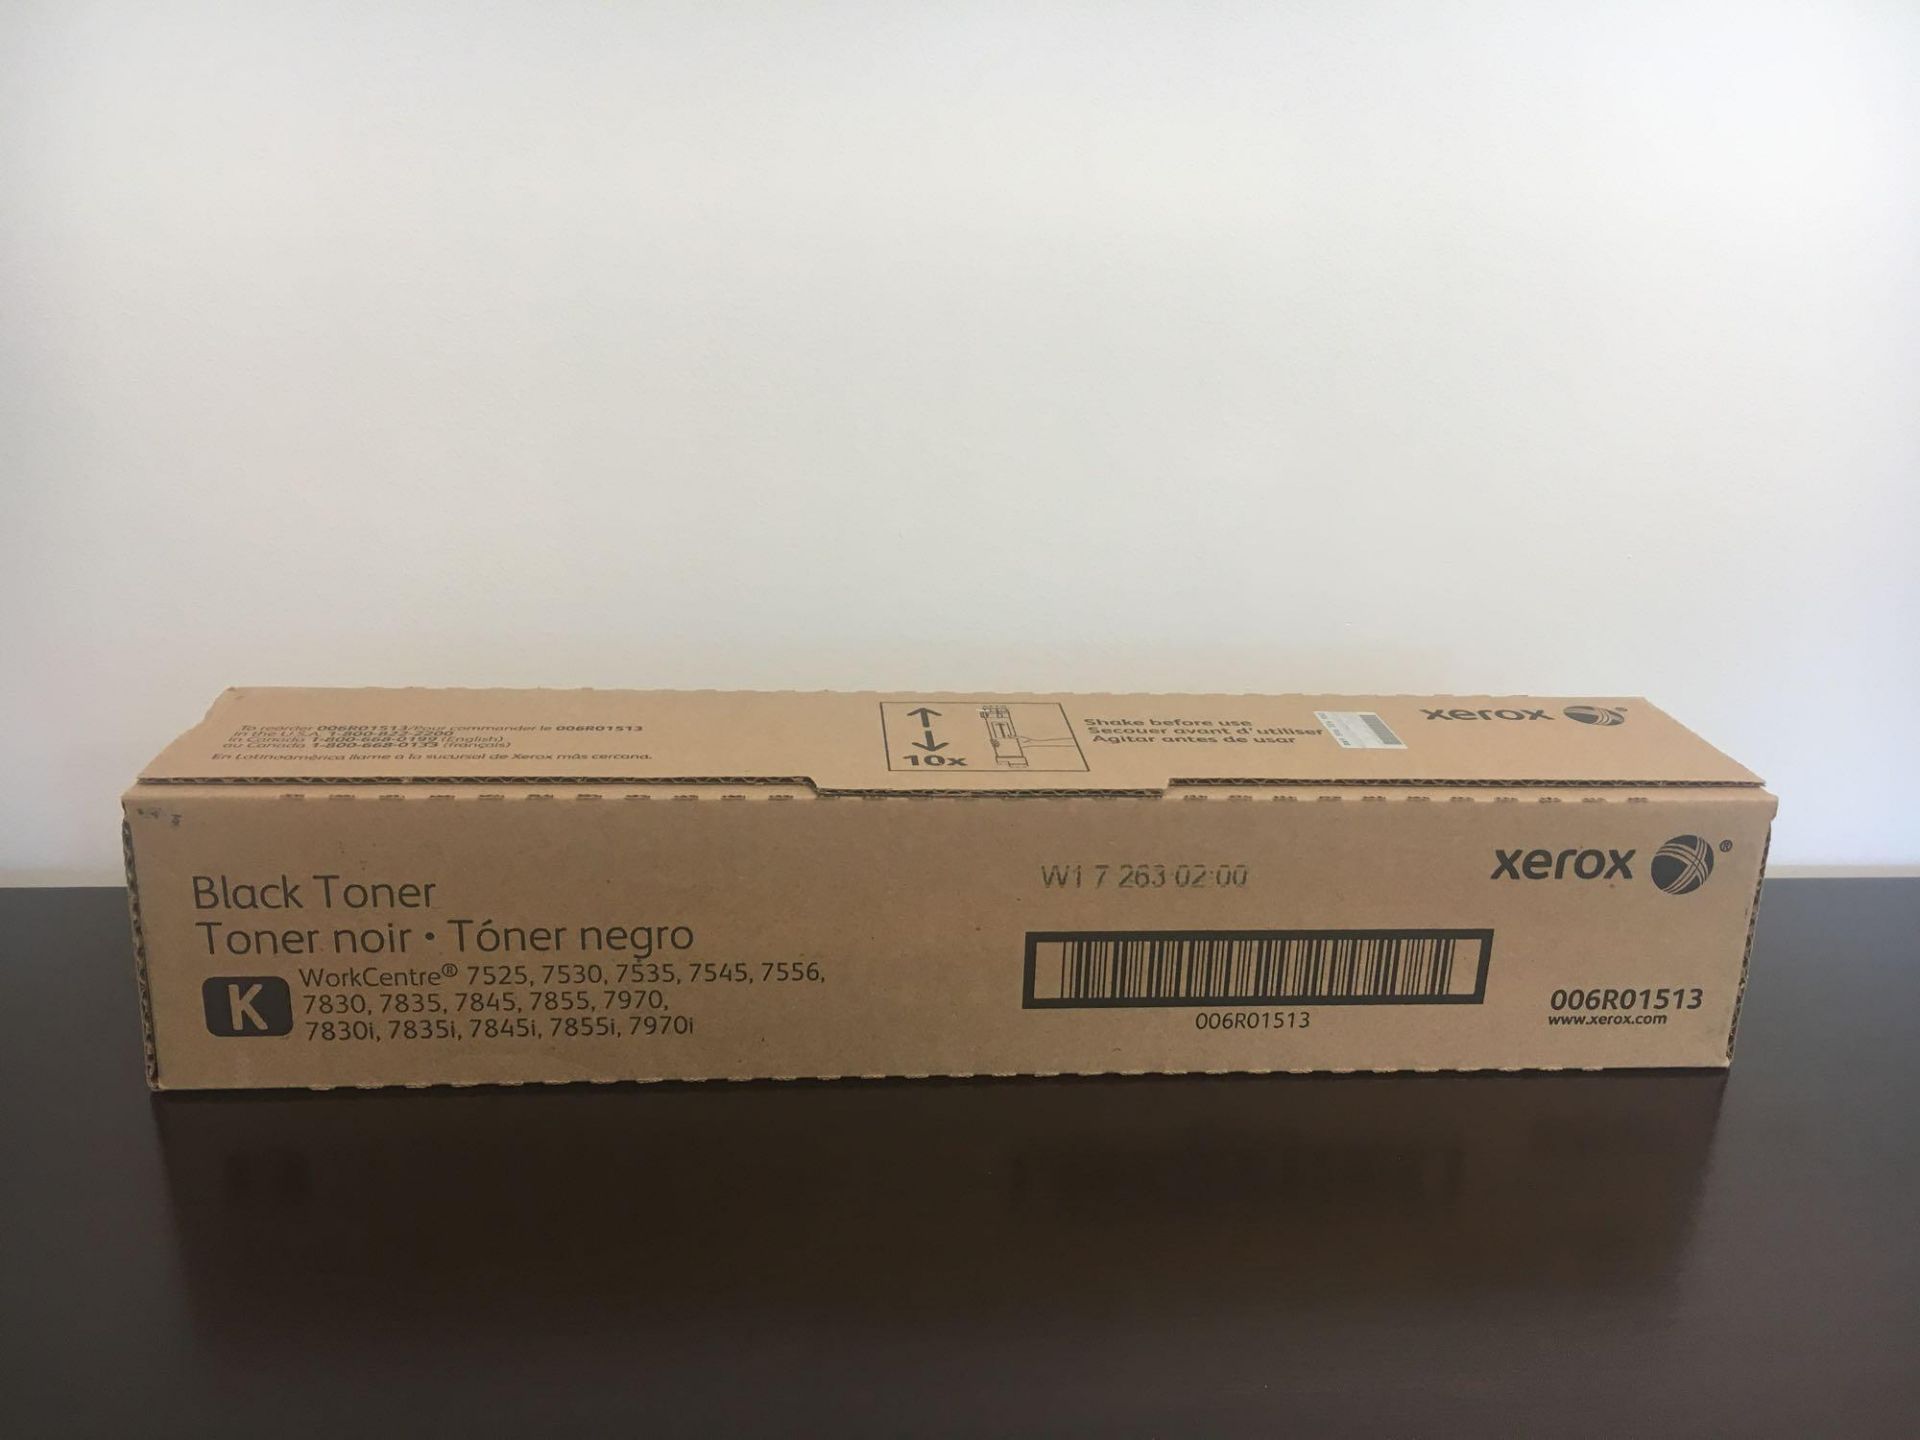 Xerox Black Toner 006R01513